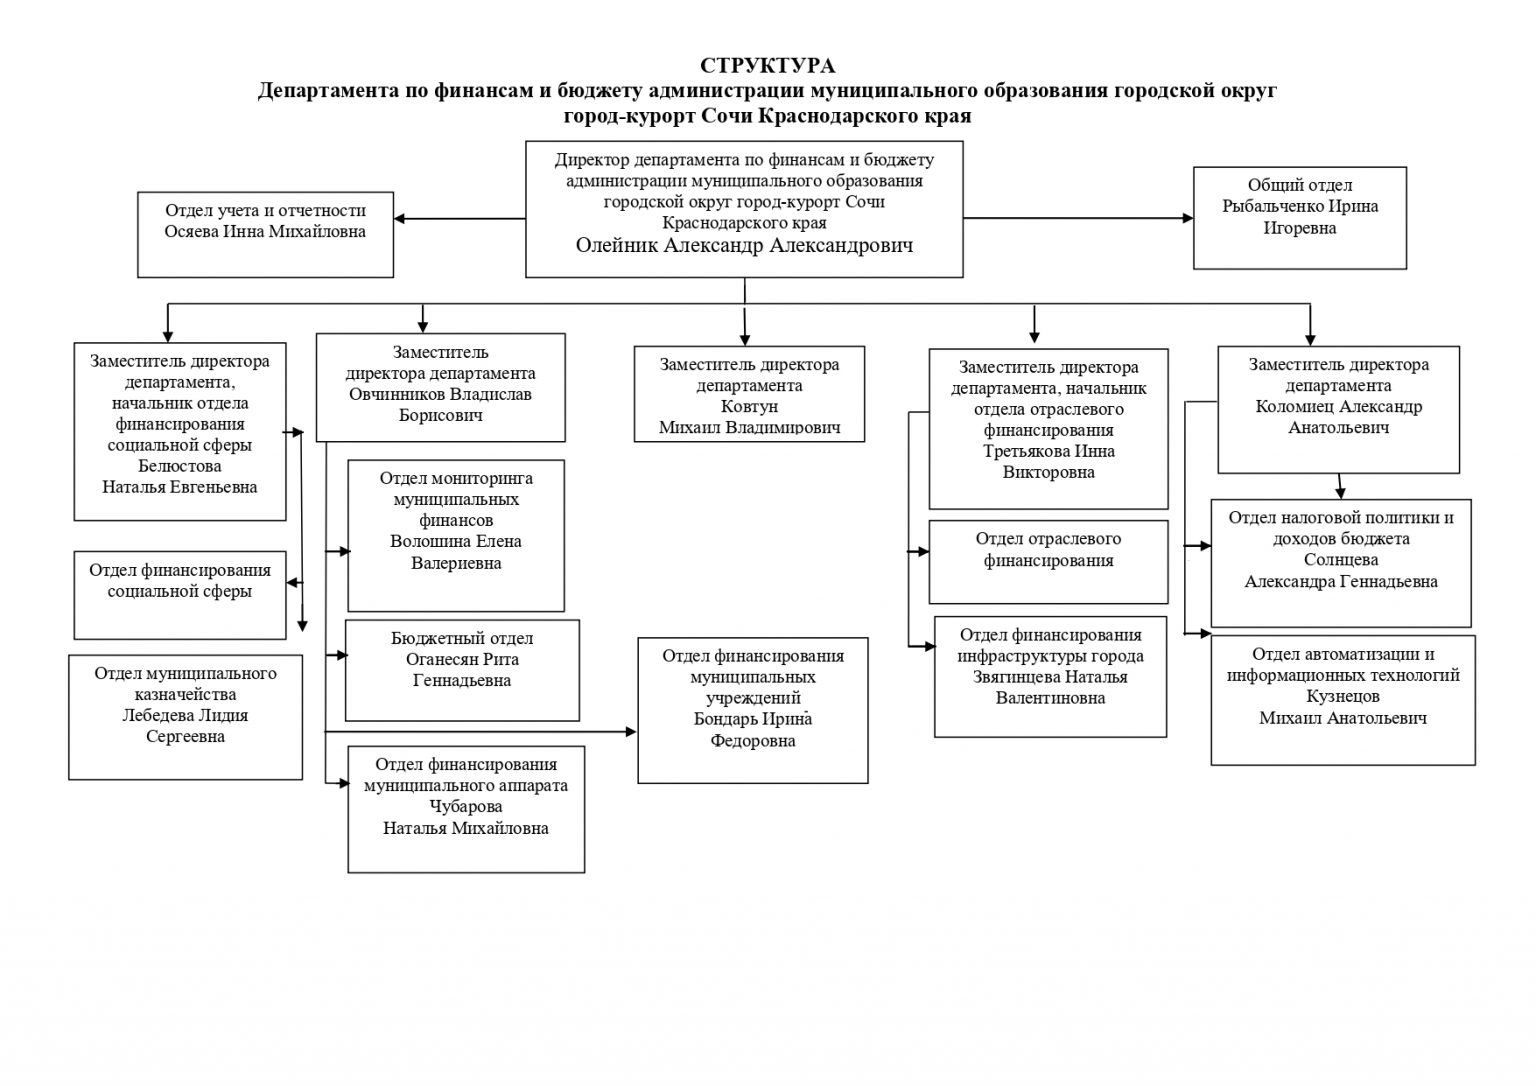 Структура департамента финансов администрации Самары